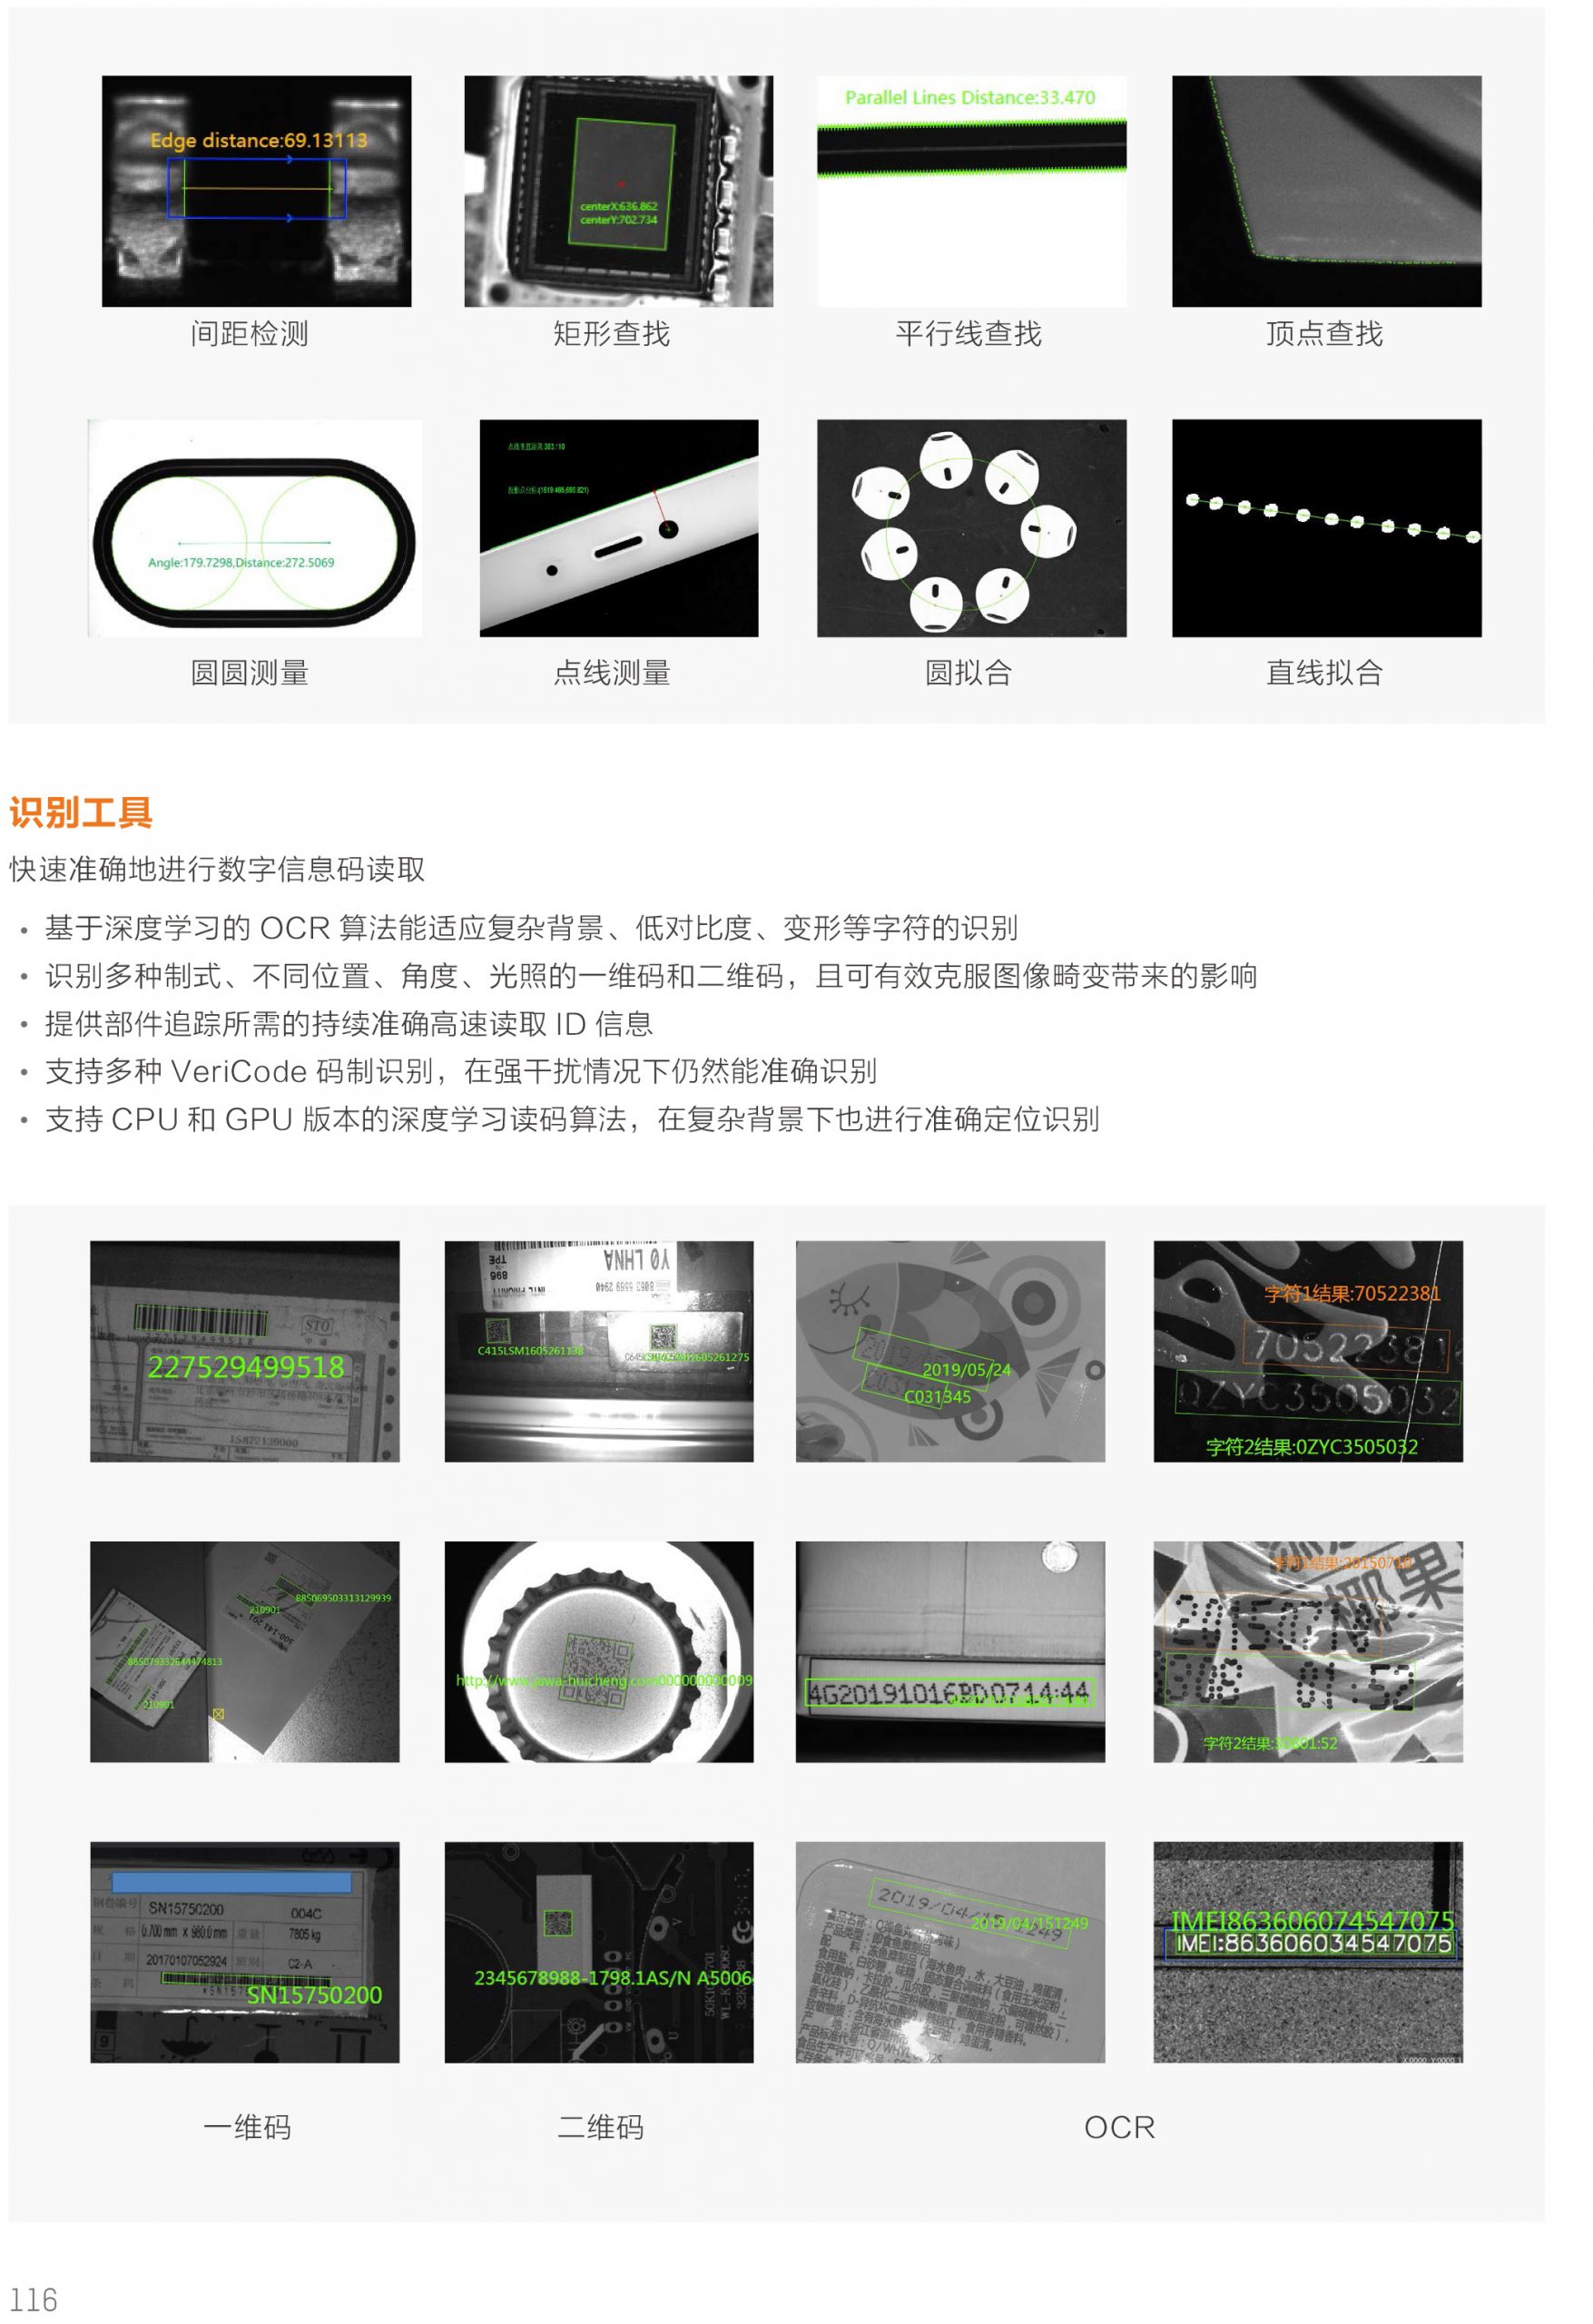 海康威视iMVS-VM-7100 机器视觉平台算法平台加密狗海康算法平台VisionMaster-捷利得(北京)自动化科技有限公司